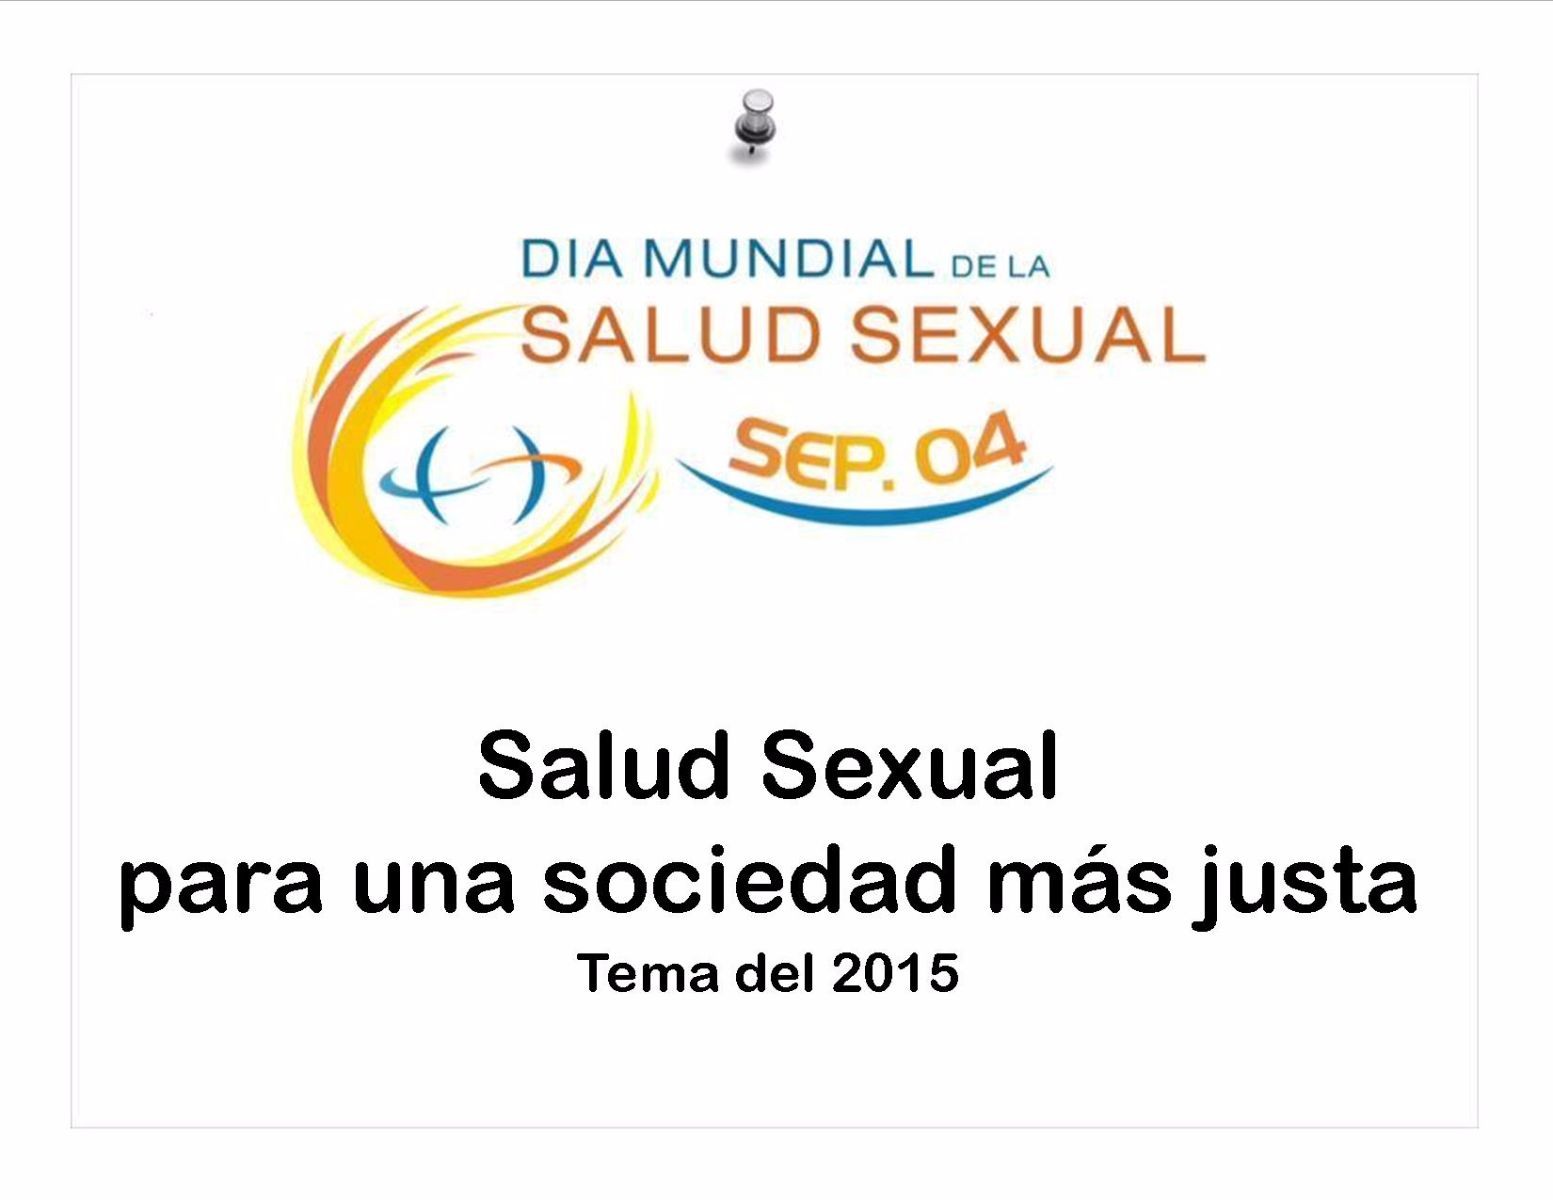 Ilustración con el texto "4 de septiembre de 2015, Día Mundial de la Salud Sexual, salud sexual para una sociedad más justa"